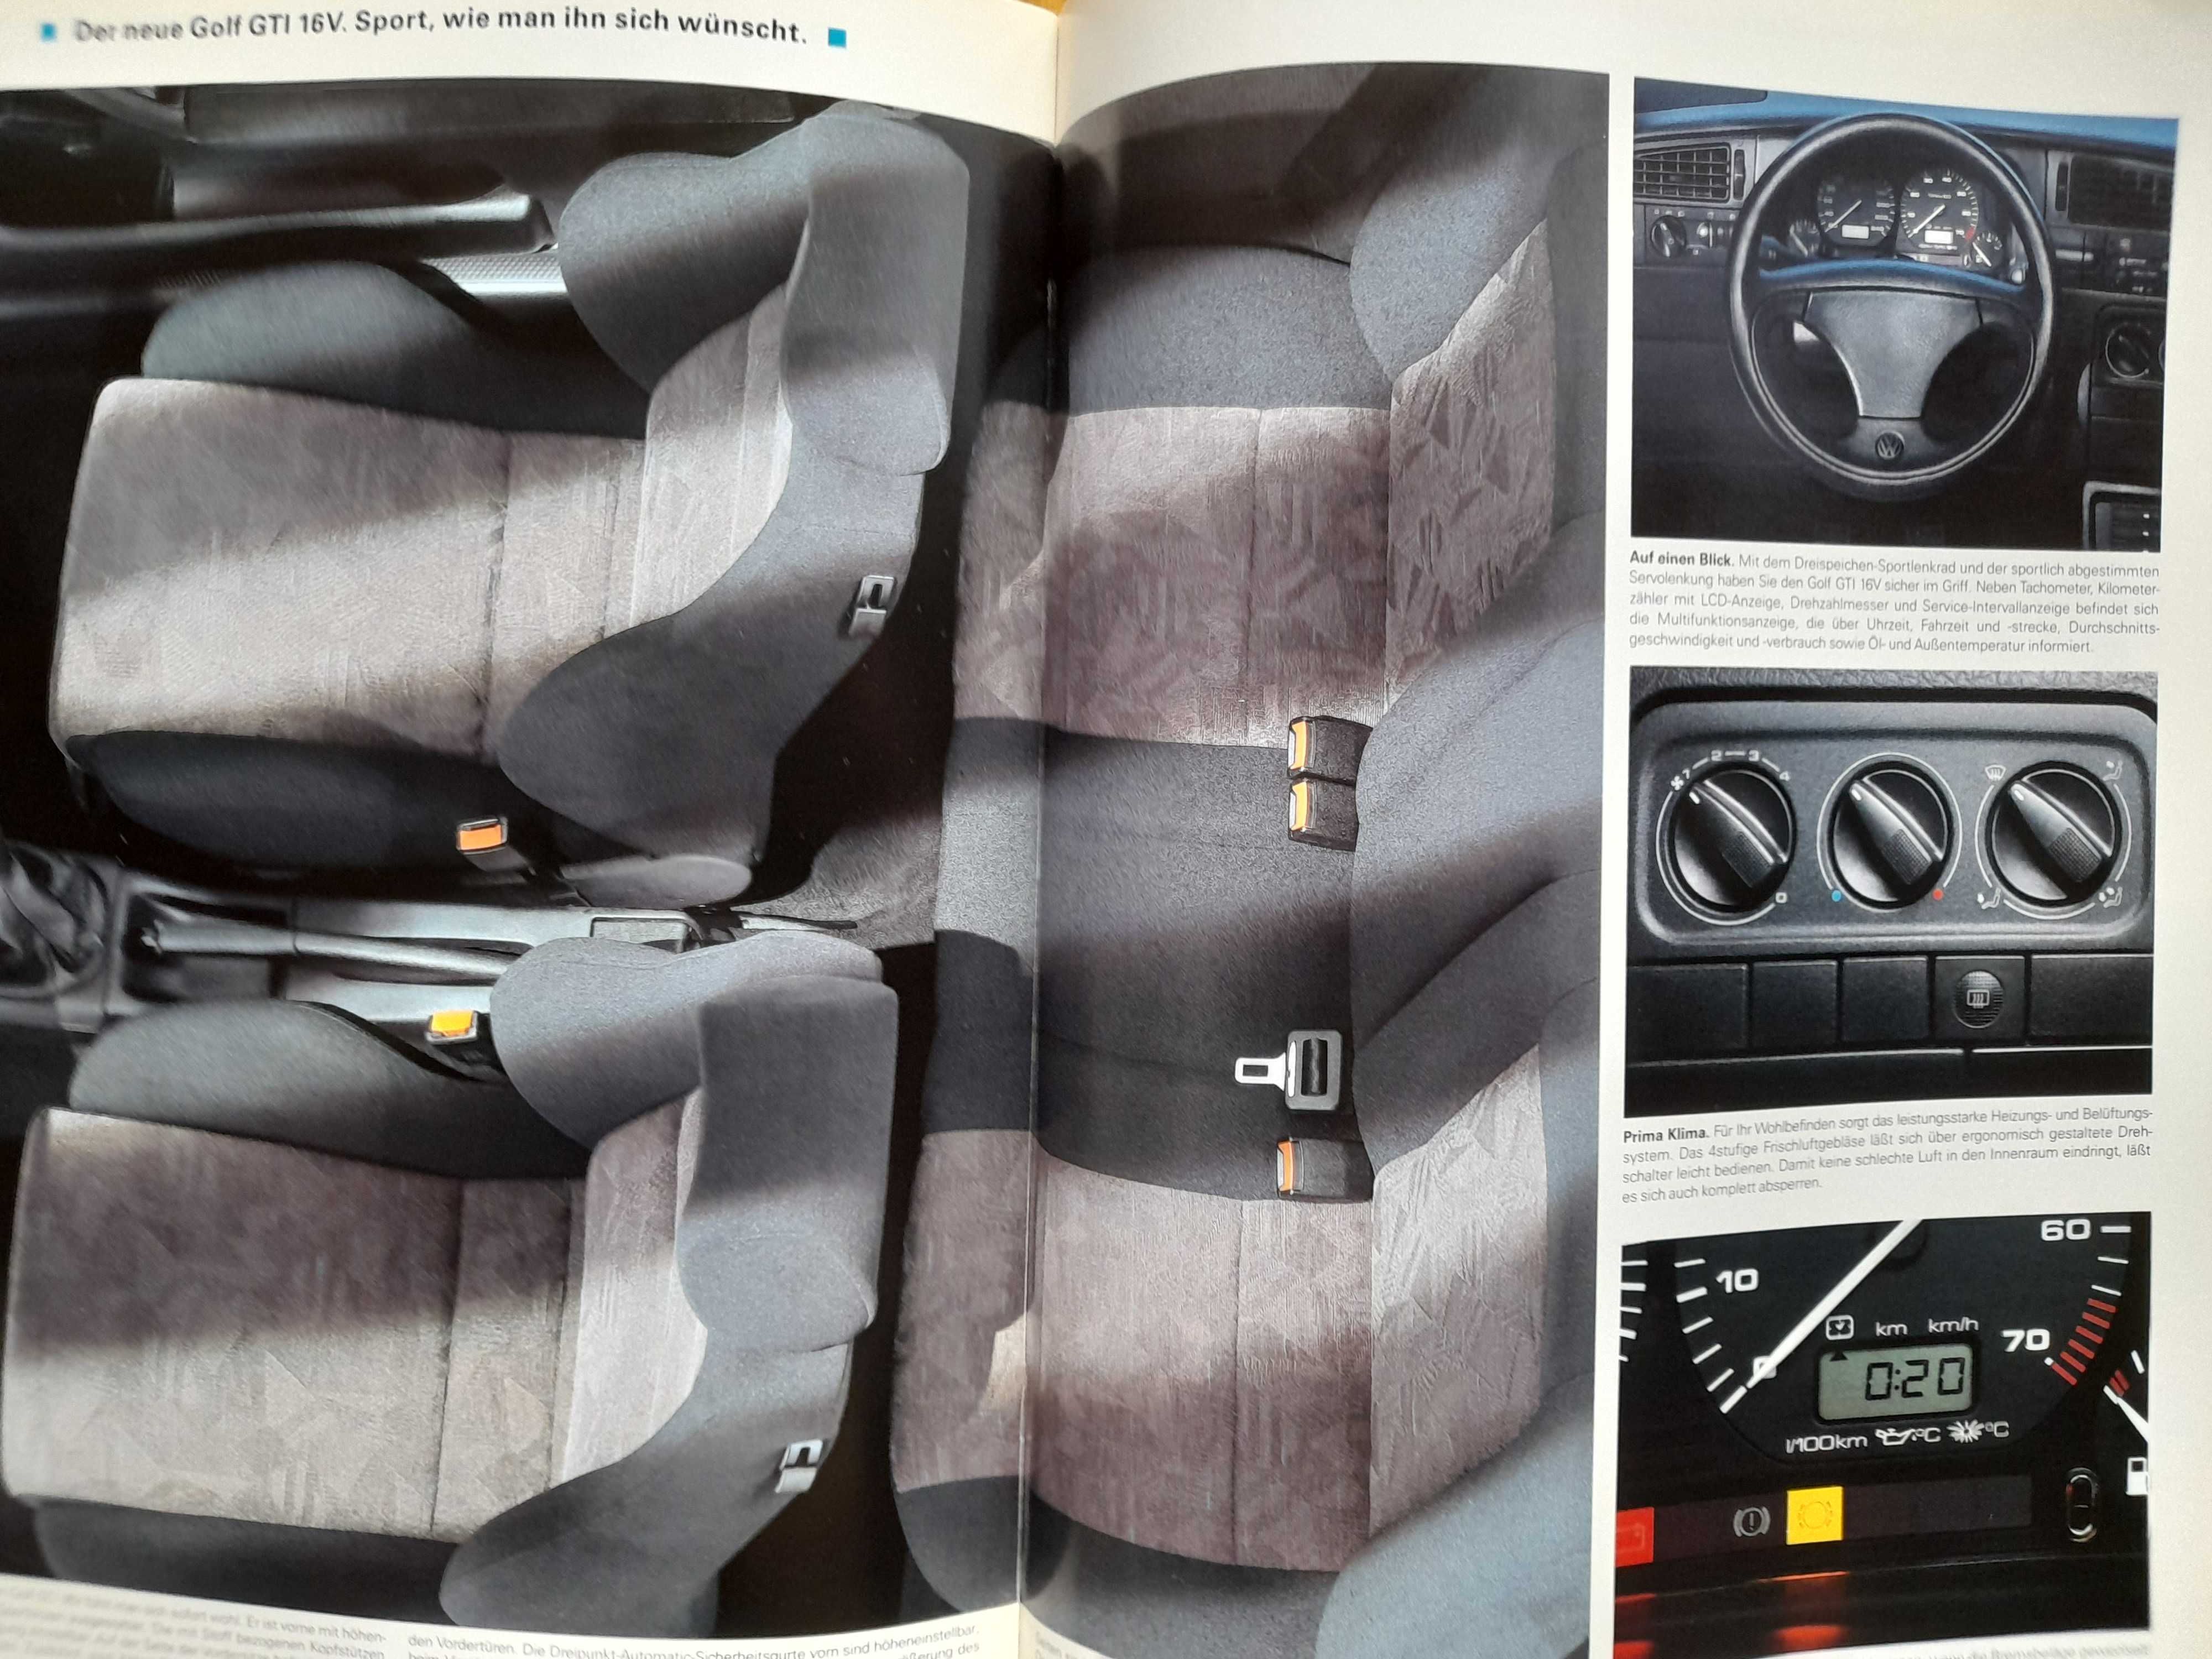 VOLKSWAGEN Golf GTI prospekt niemiecki rok 1991